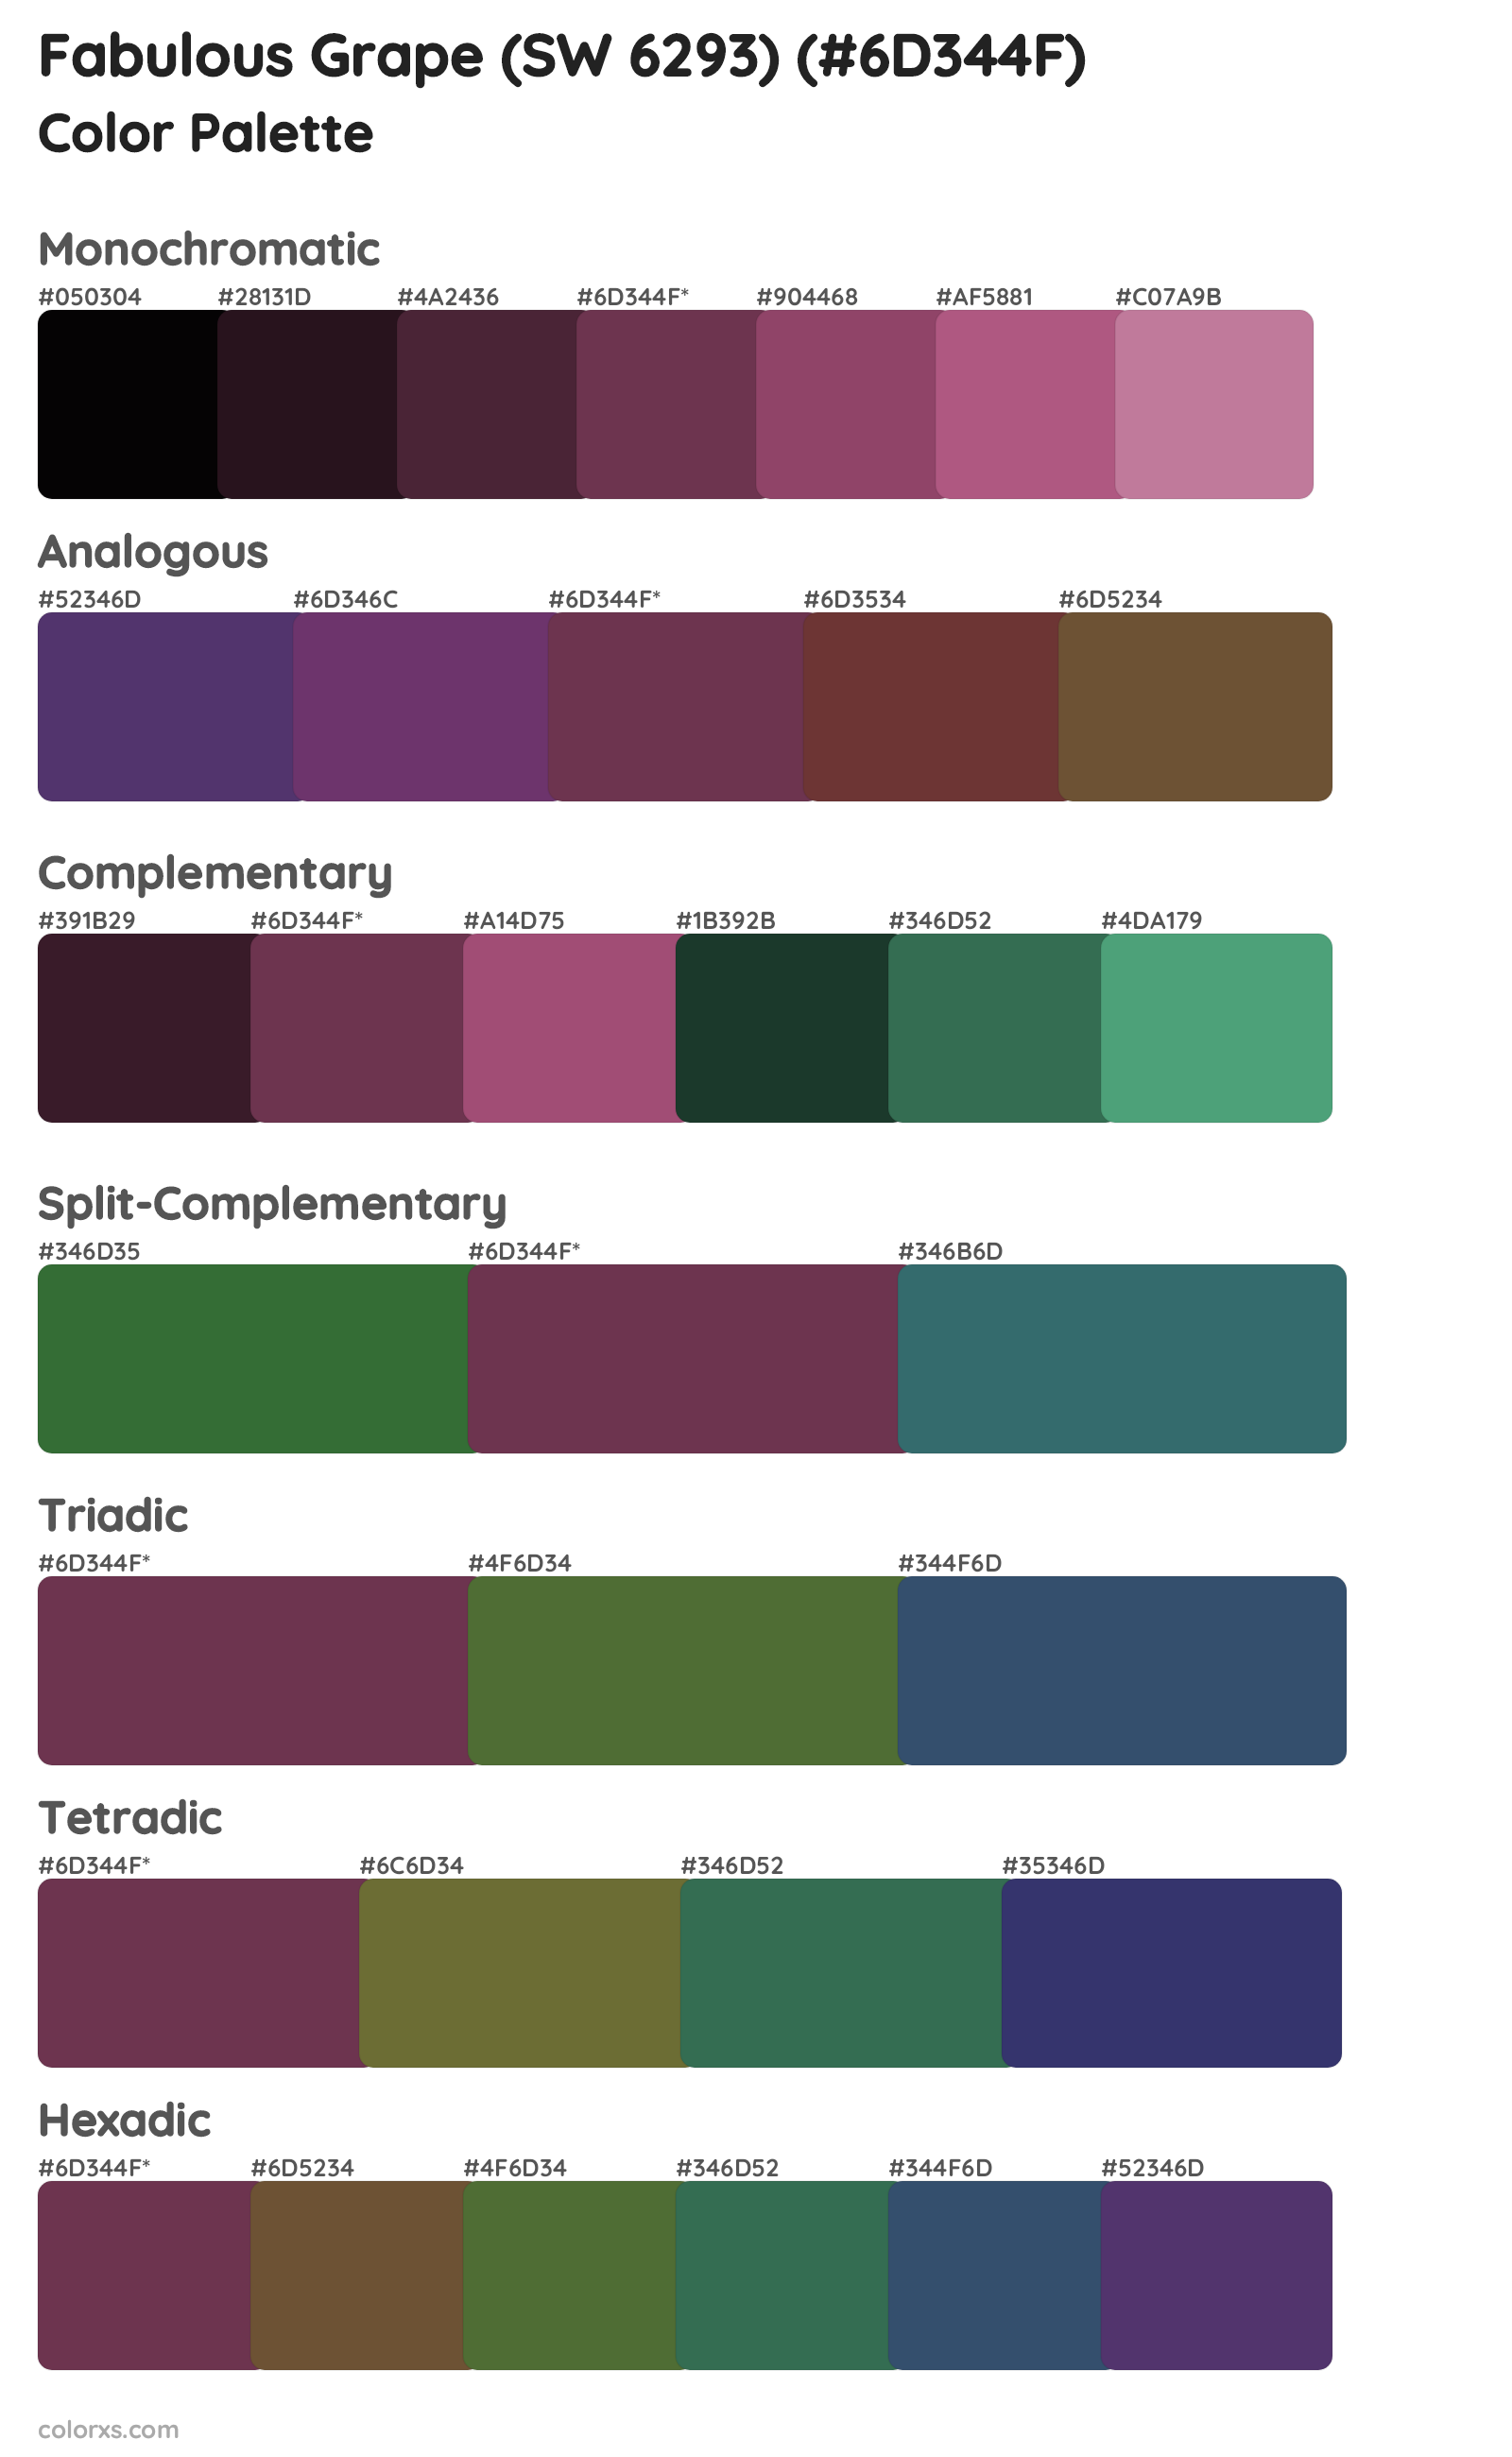 Fabulous Grape (SW 6293) Color Scheme Palettes